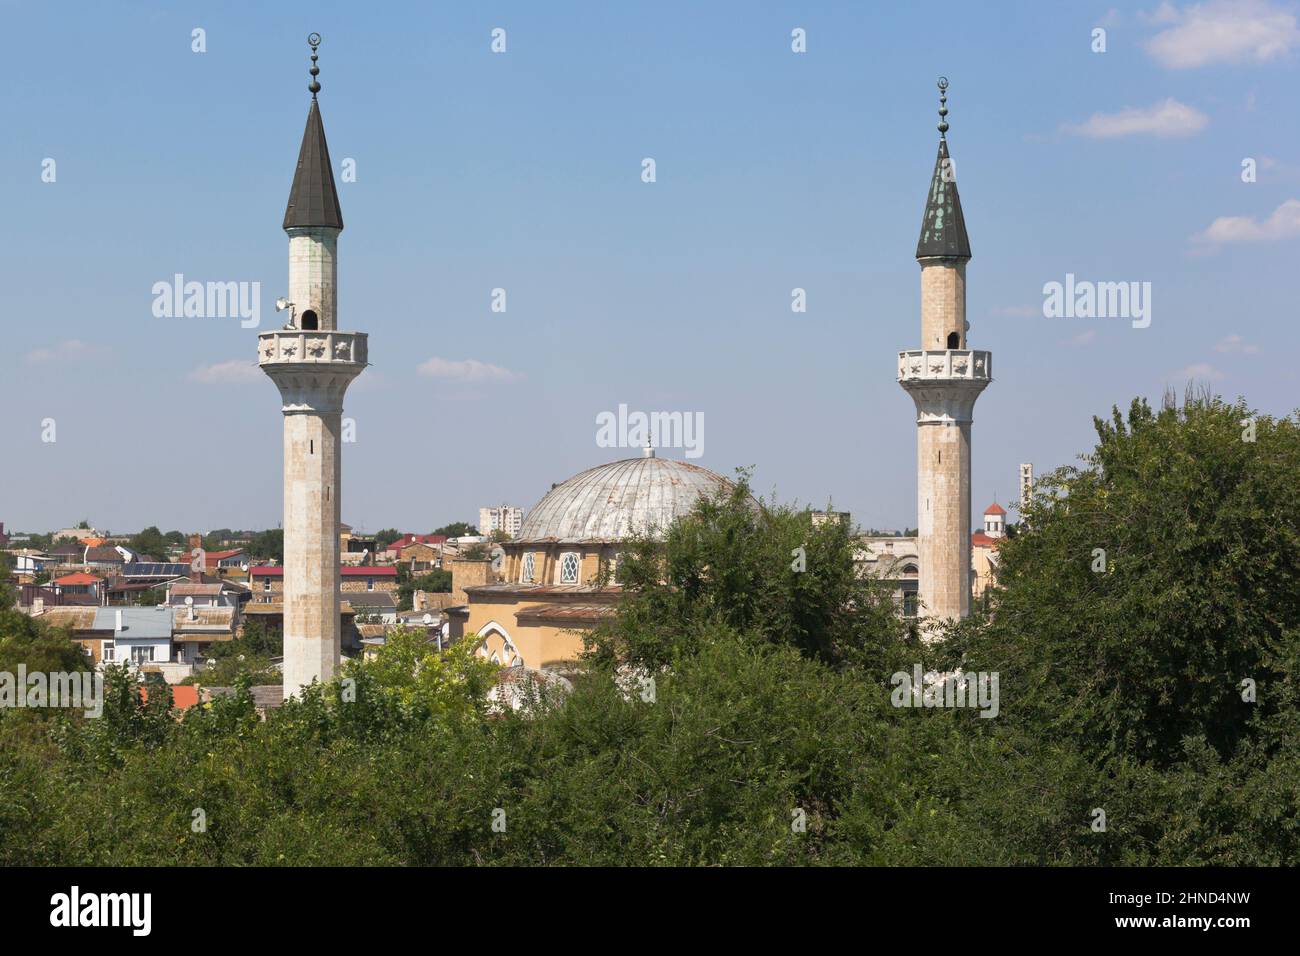 Cathedral mosque Juma-Jami in the city of Evpatoria, Crimea, Russia Stock Photo